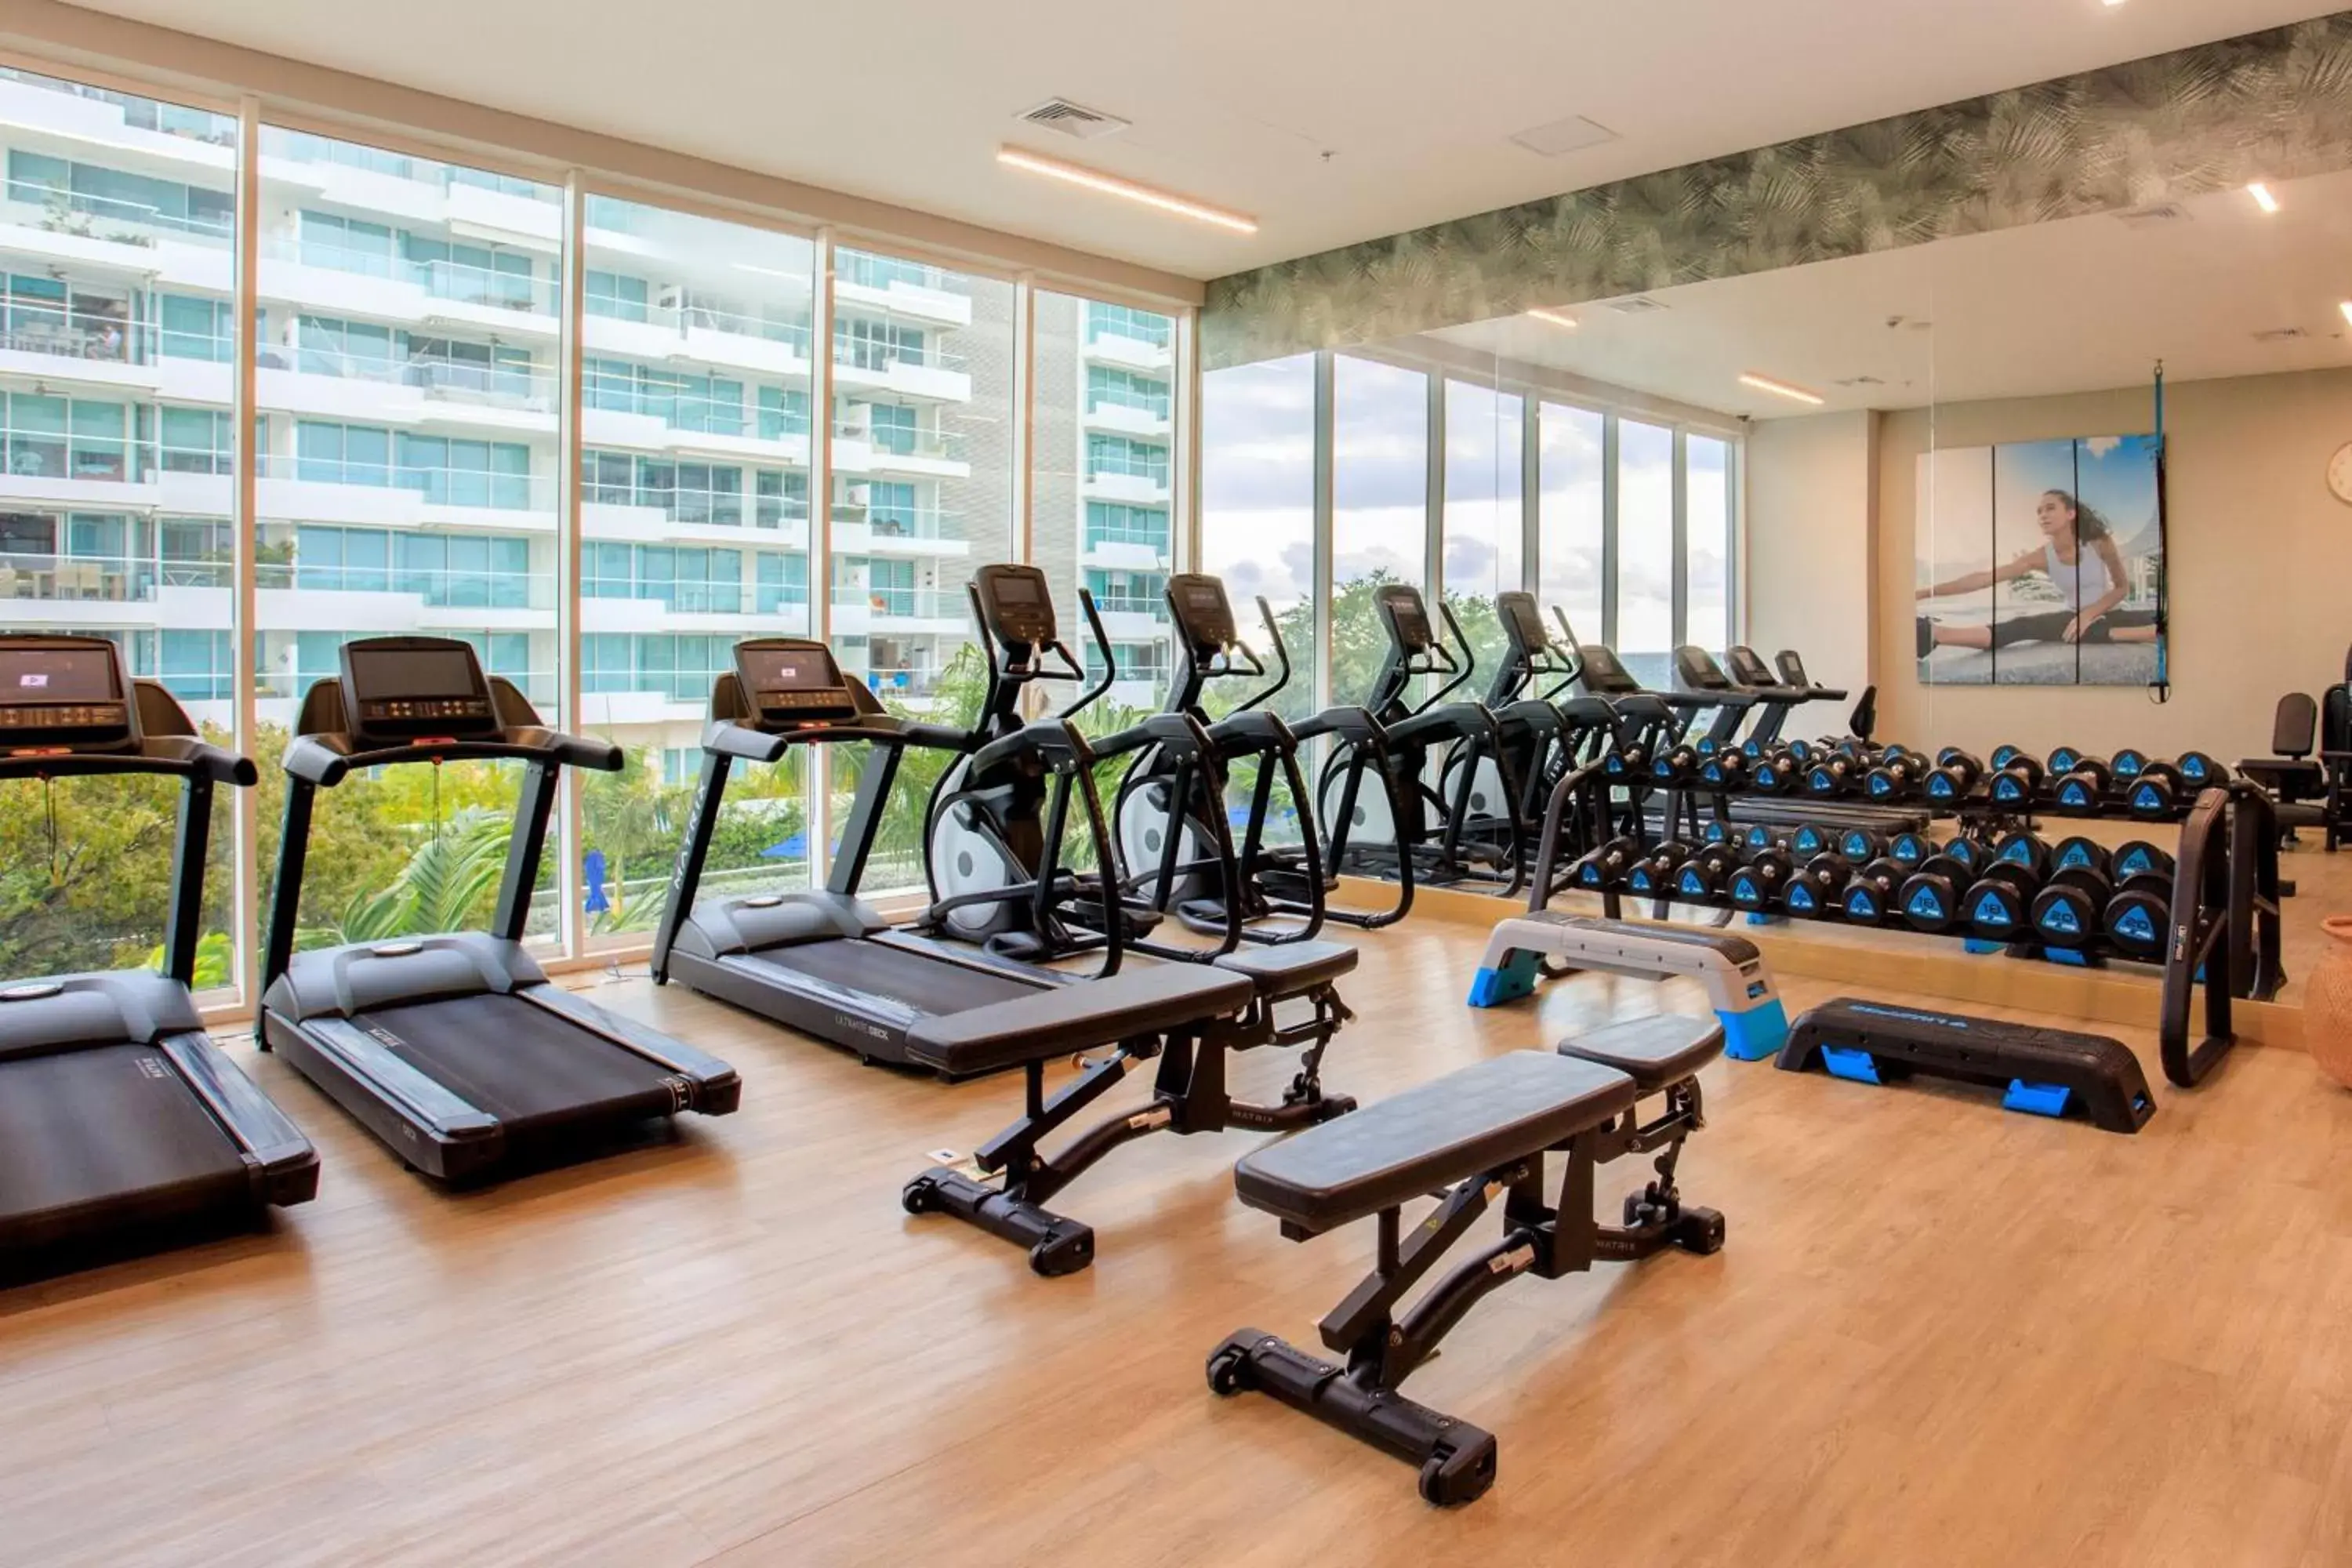 Fitness centre/facilities, Fitness Center/Facilities in Santa Marta Marriott Resort Playa Dormida